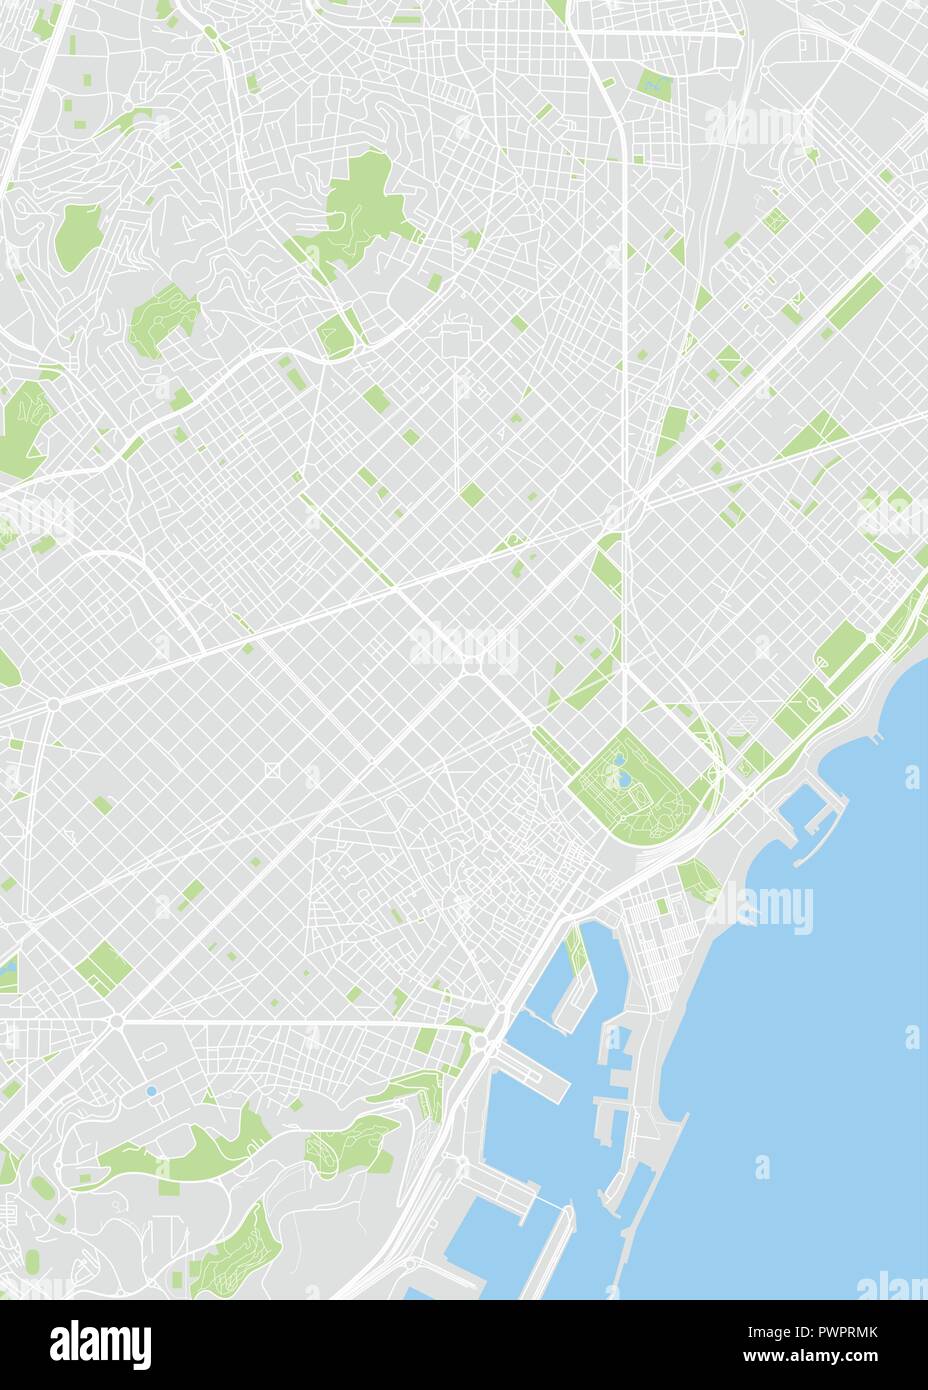 Couleur de Barcelone carte vectorielle plan détaillé de la ville, les rivières et les rues Illustration de Vecteur